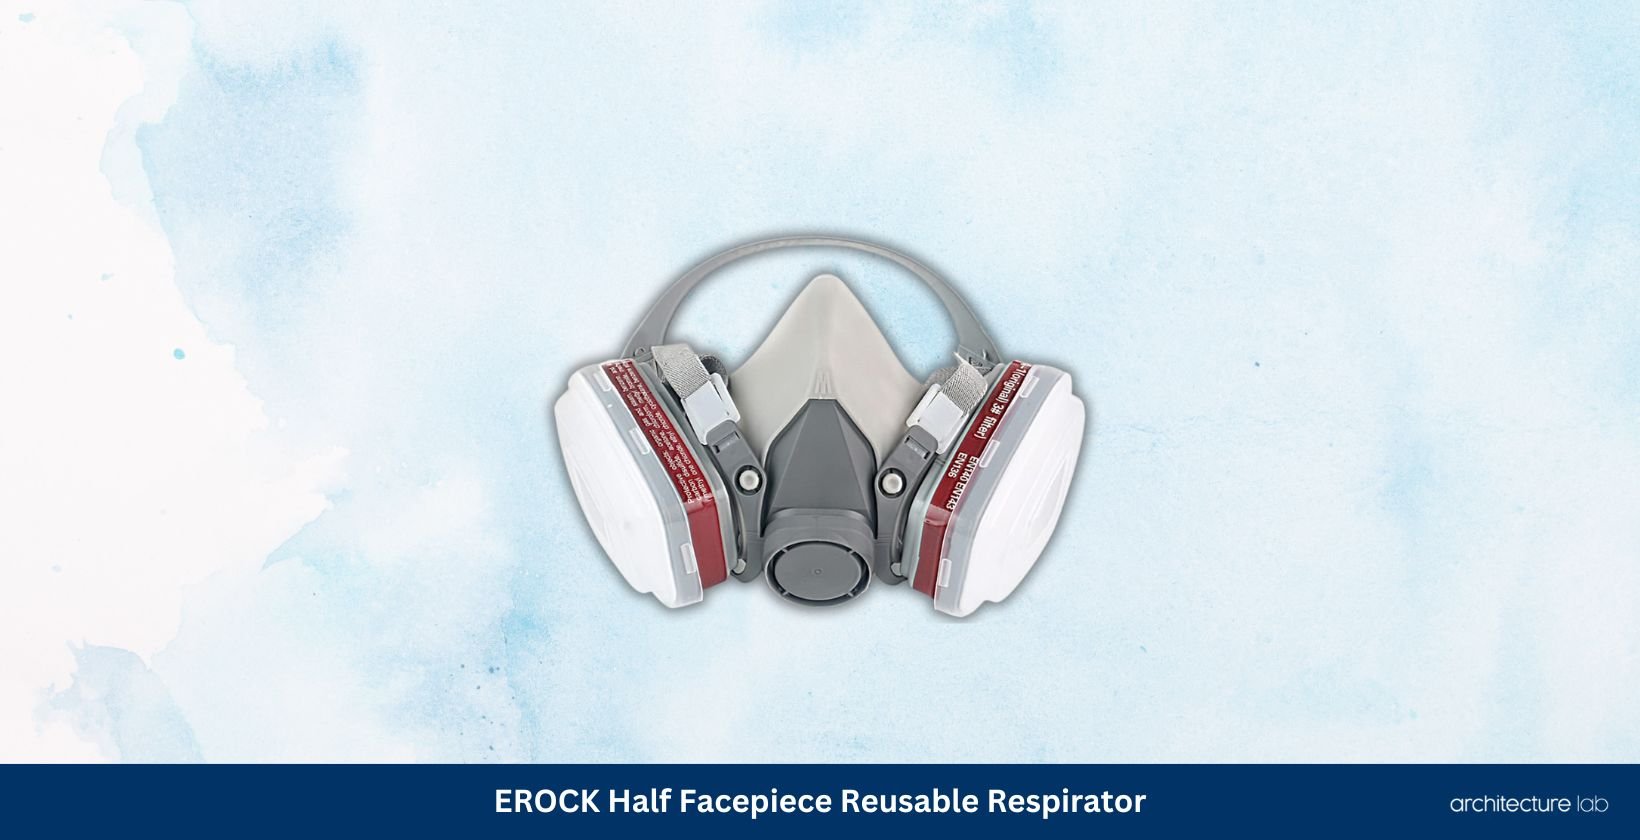 Erock half facepiece reusable respirator